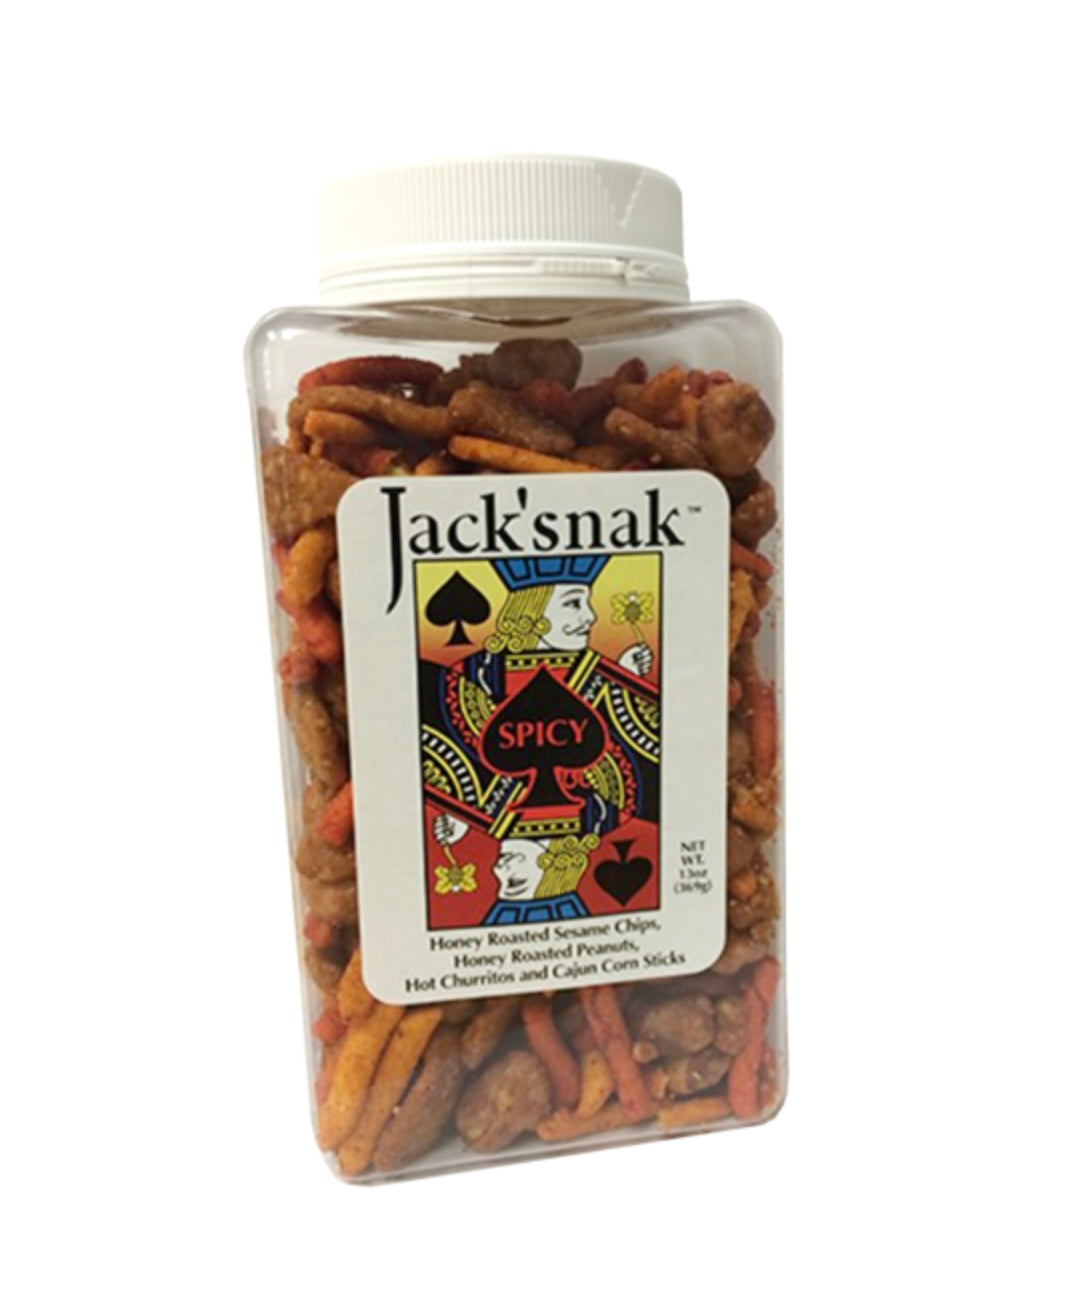 Jack’snak Spicy Mix 13 oz